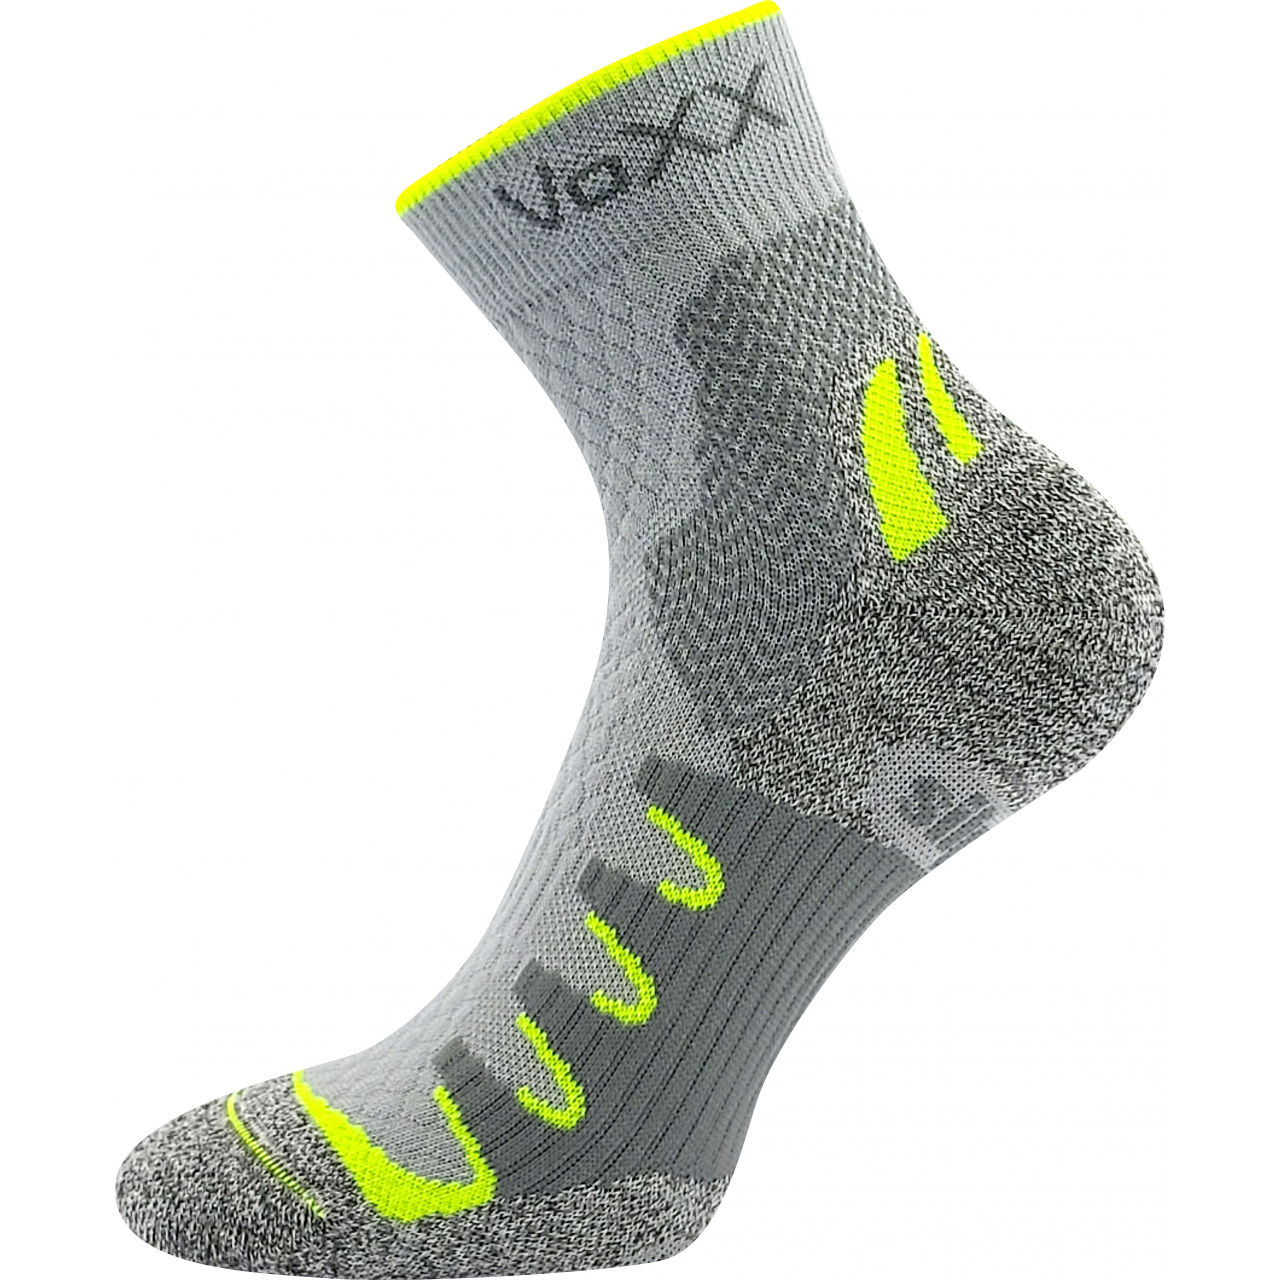 Ponožky snížené sportovní Voxx Synergy silproX - šedé-žluté, 43-46